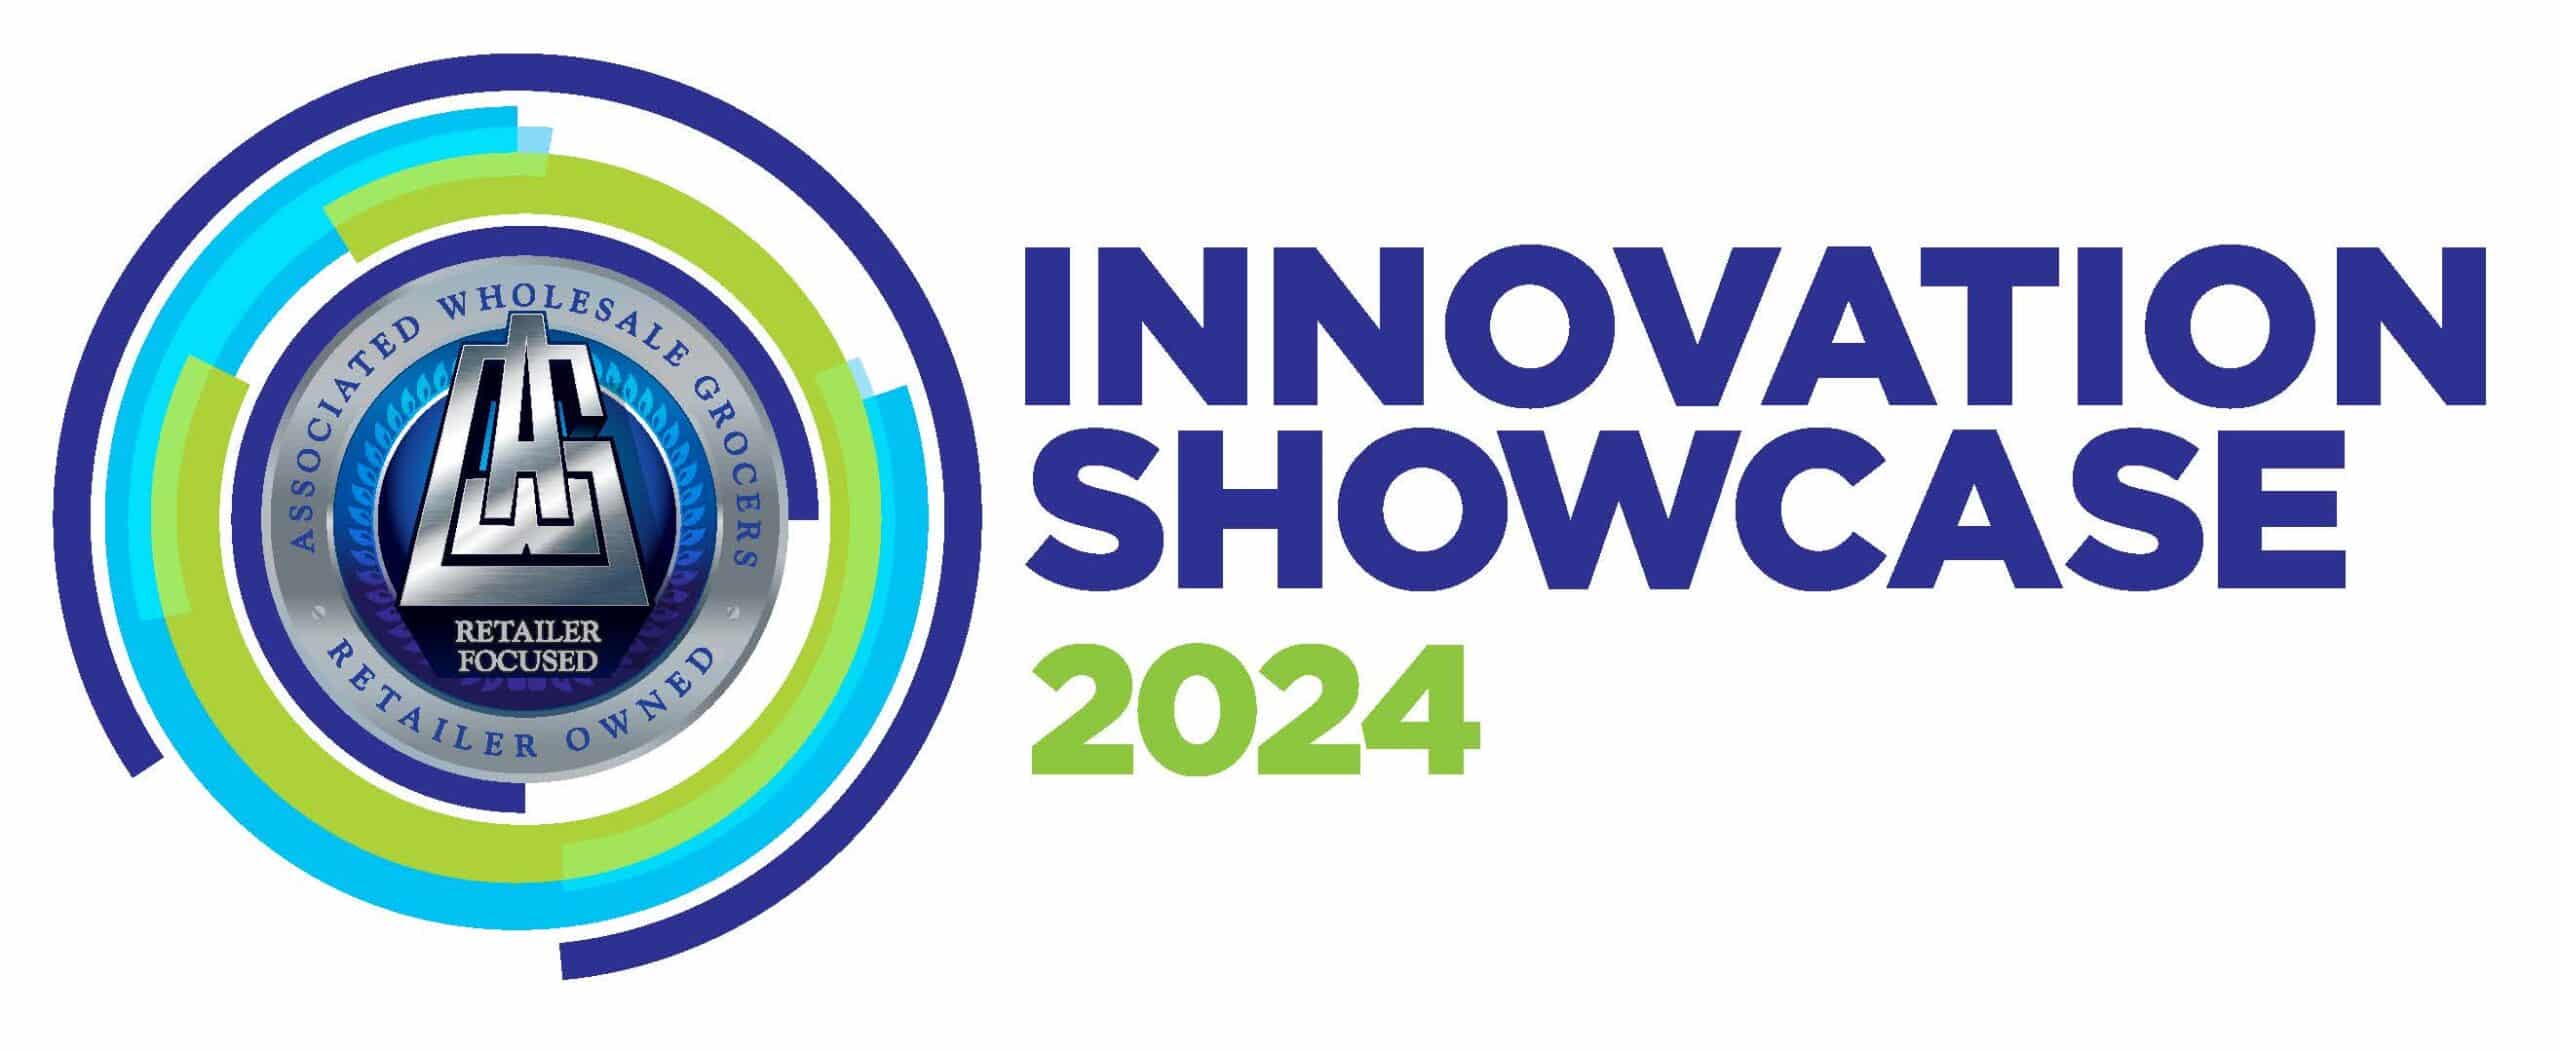 Innovation Showcase 2024